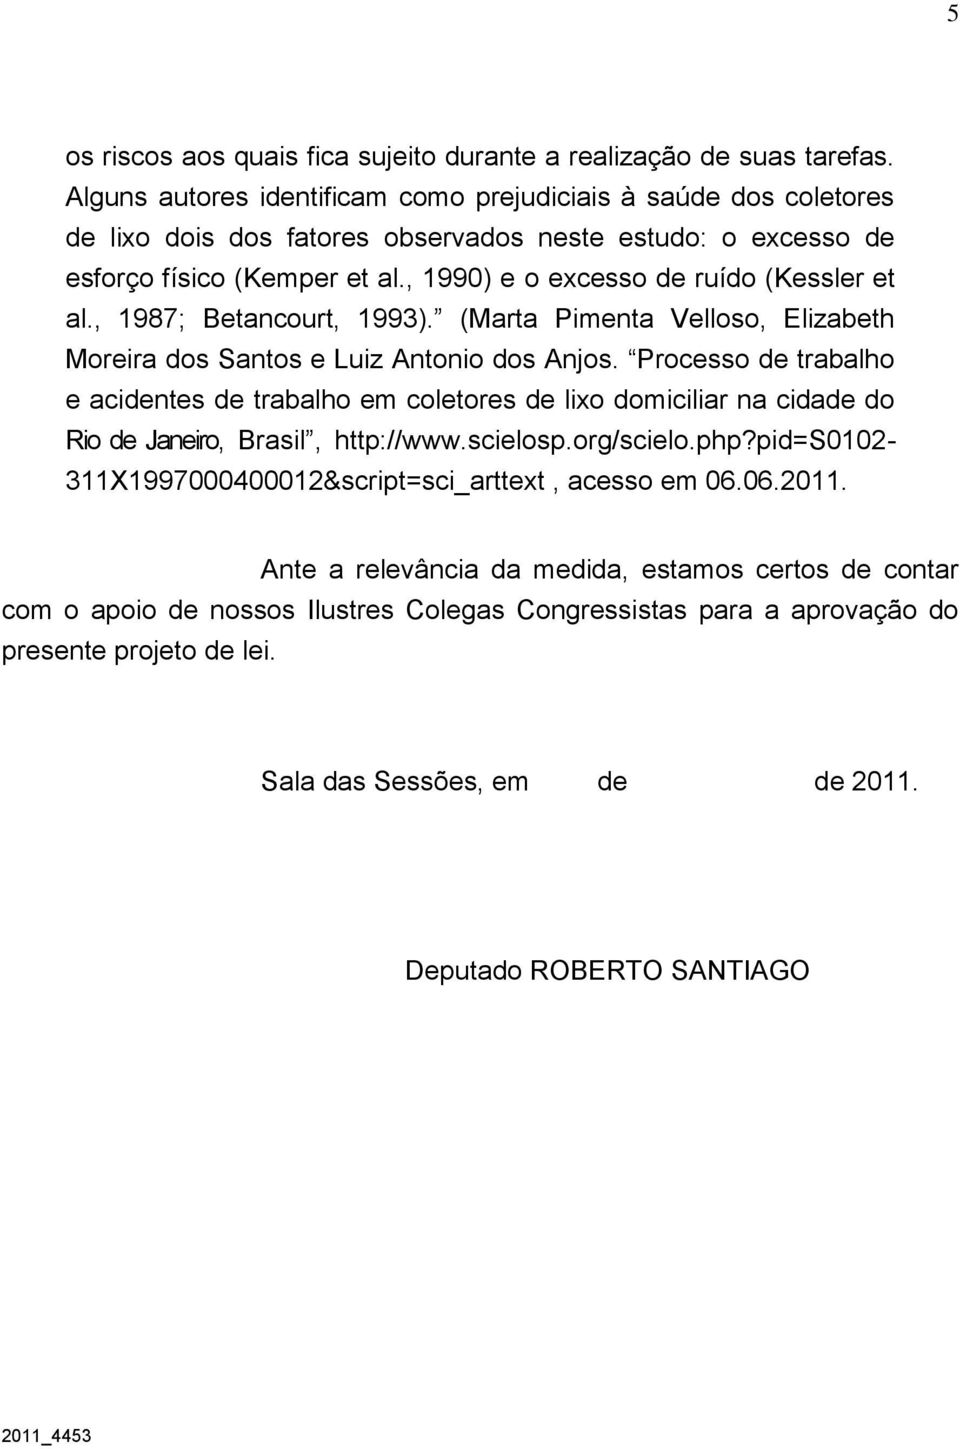 , 1990) e o excesso de ruído (Kessler et al., 1987; Betancourt, 1993). (Marta Pimenta Velloso, Elizabeth Moreira dos Santos e Luiz Antonio dos Anjos.